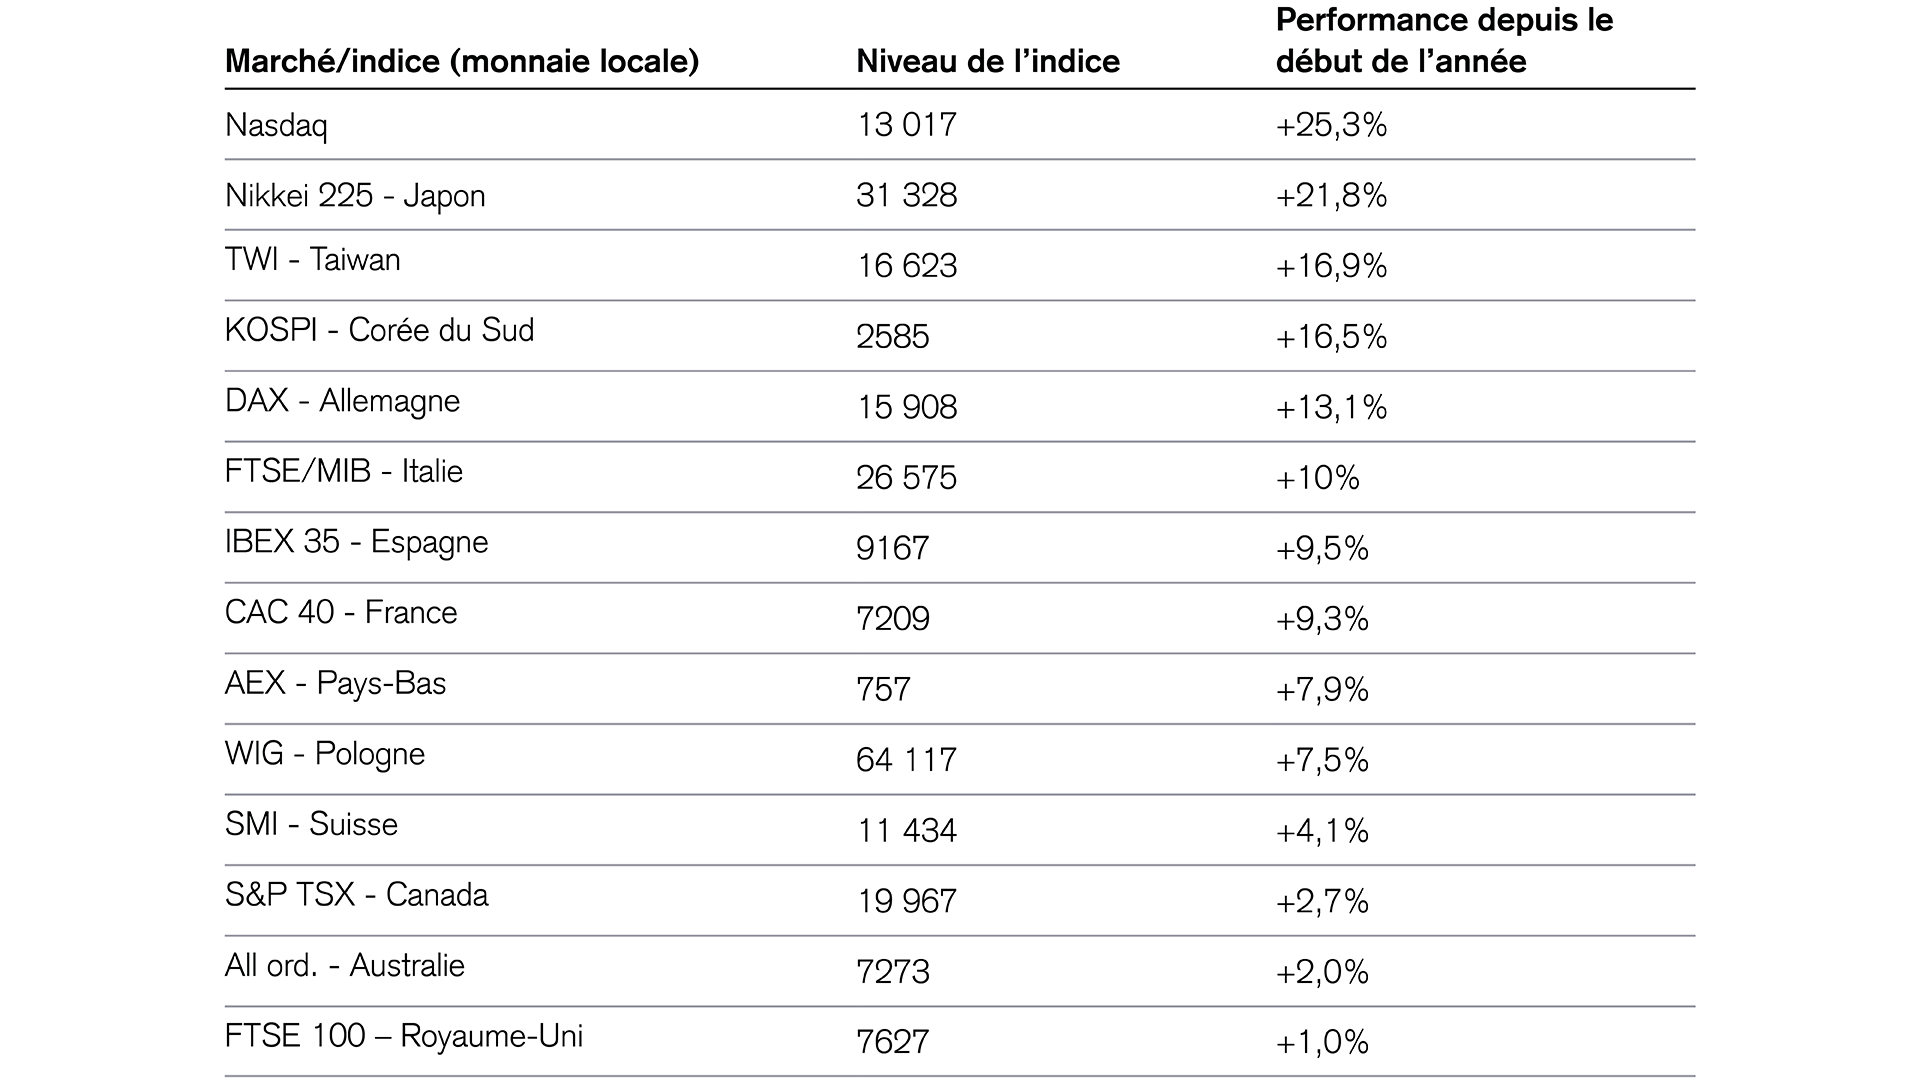 Performance des principaux indices de pays industrialisés 